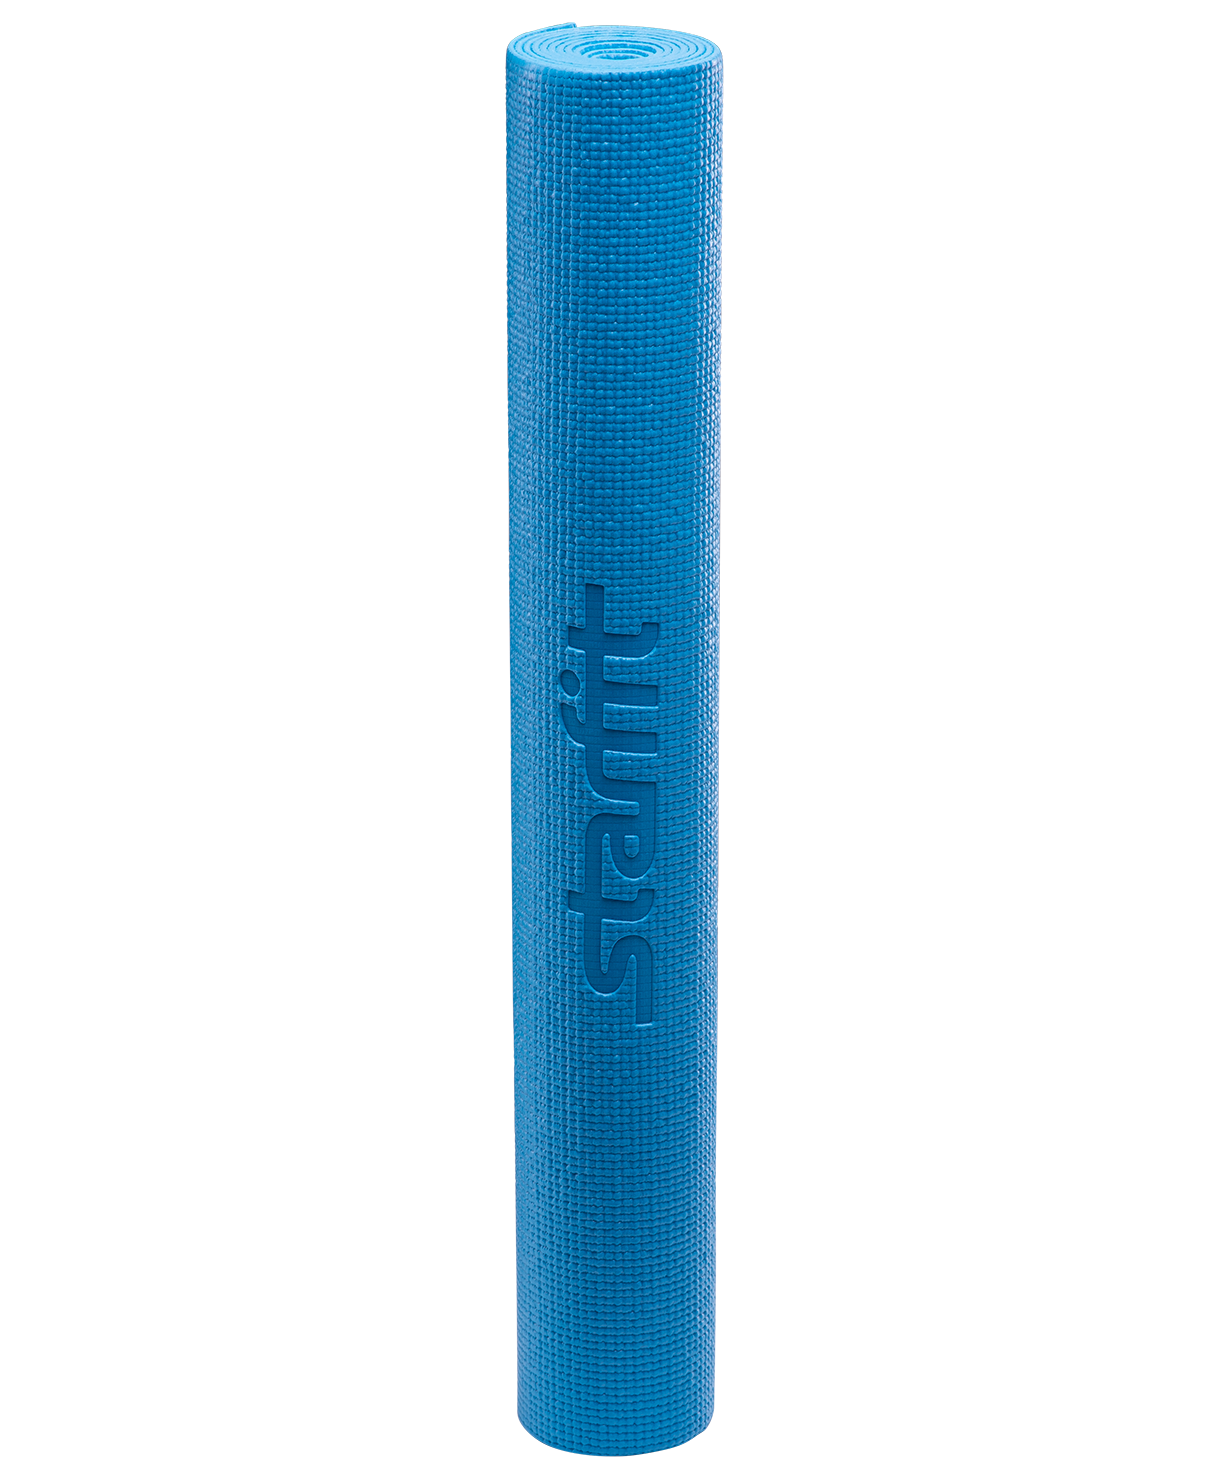 Коврик для йоги FM-101, PVC, 173x61x0,8 см, синий